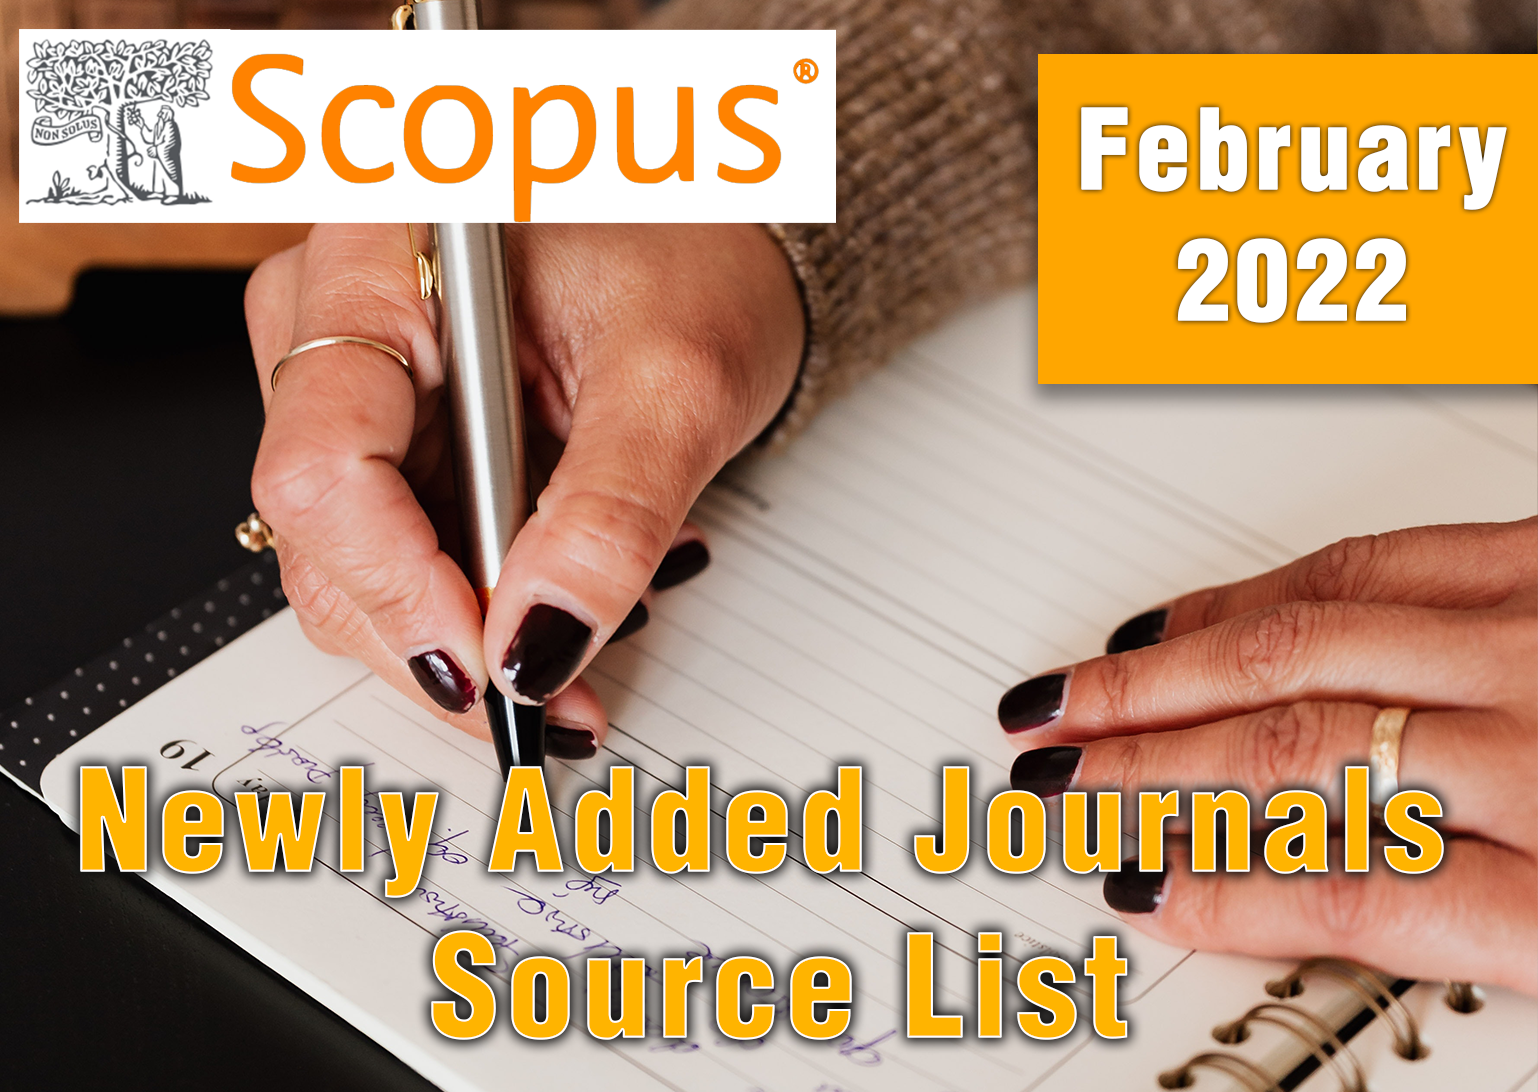 Scopus NEwly Added Journals 2022